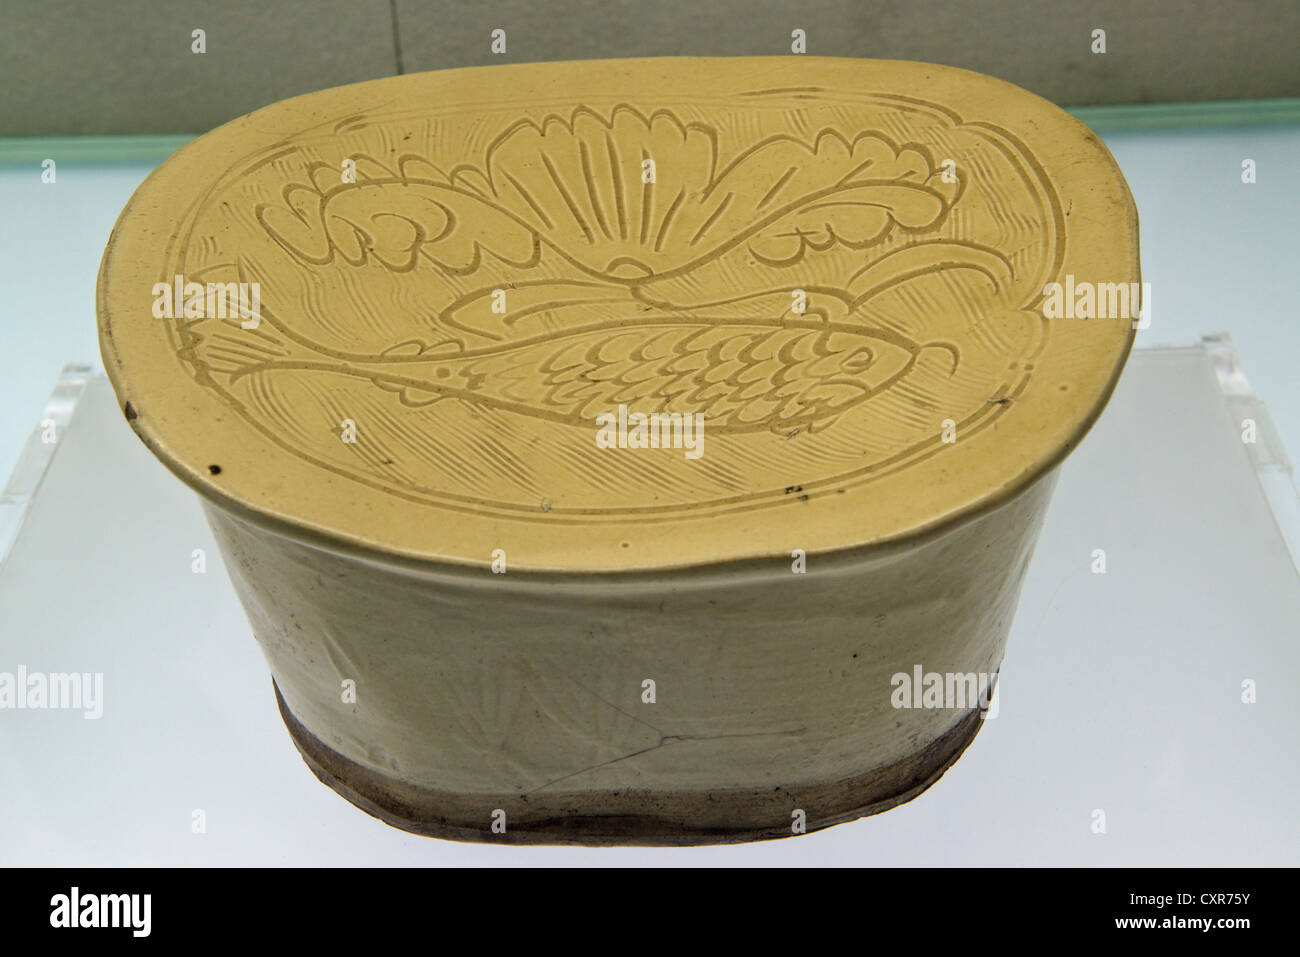 Weißes Porzellan-Kissen mit geschnitzten Fisch und Blumen Muster, Jin-Dynastie (1115-1234). Shanxi-Museum. China. Stockfoto